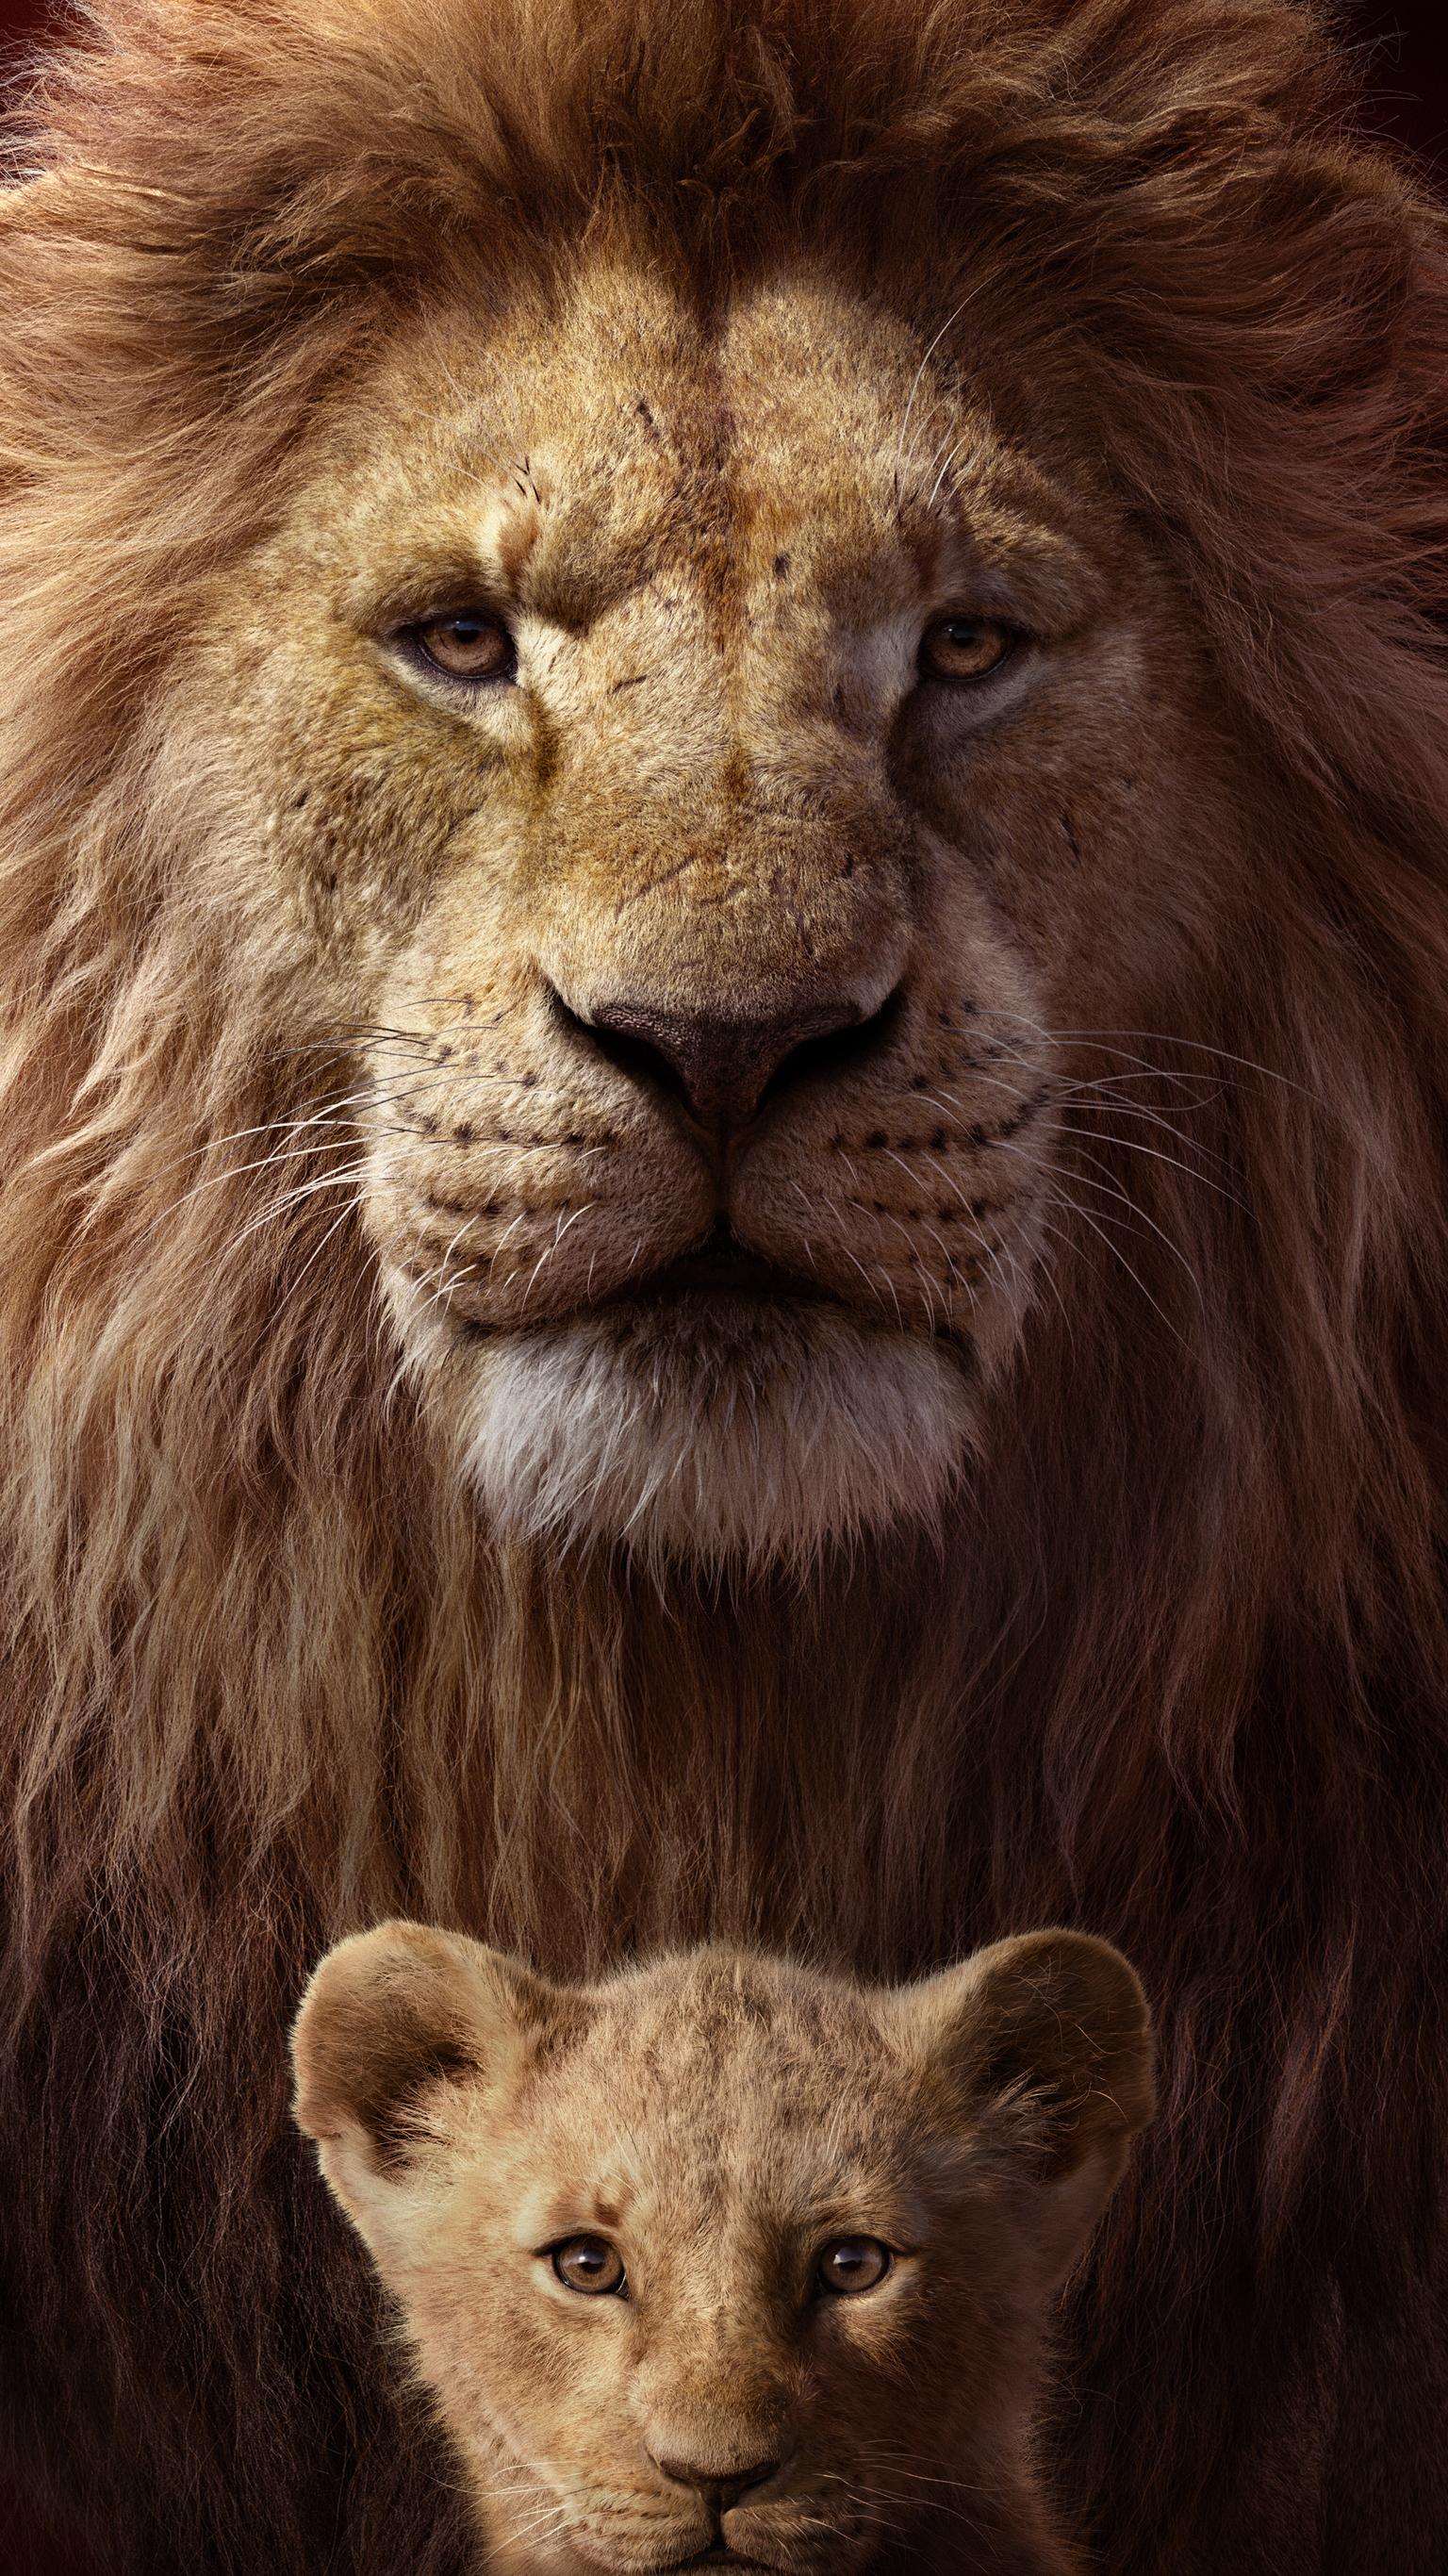 The Lion King (2019) Fondos de pantalla de teléfono | Moviemania